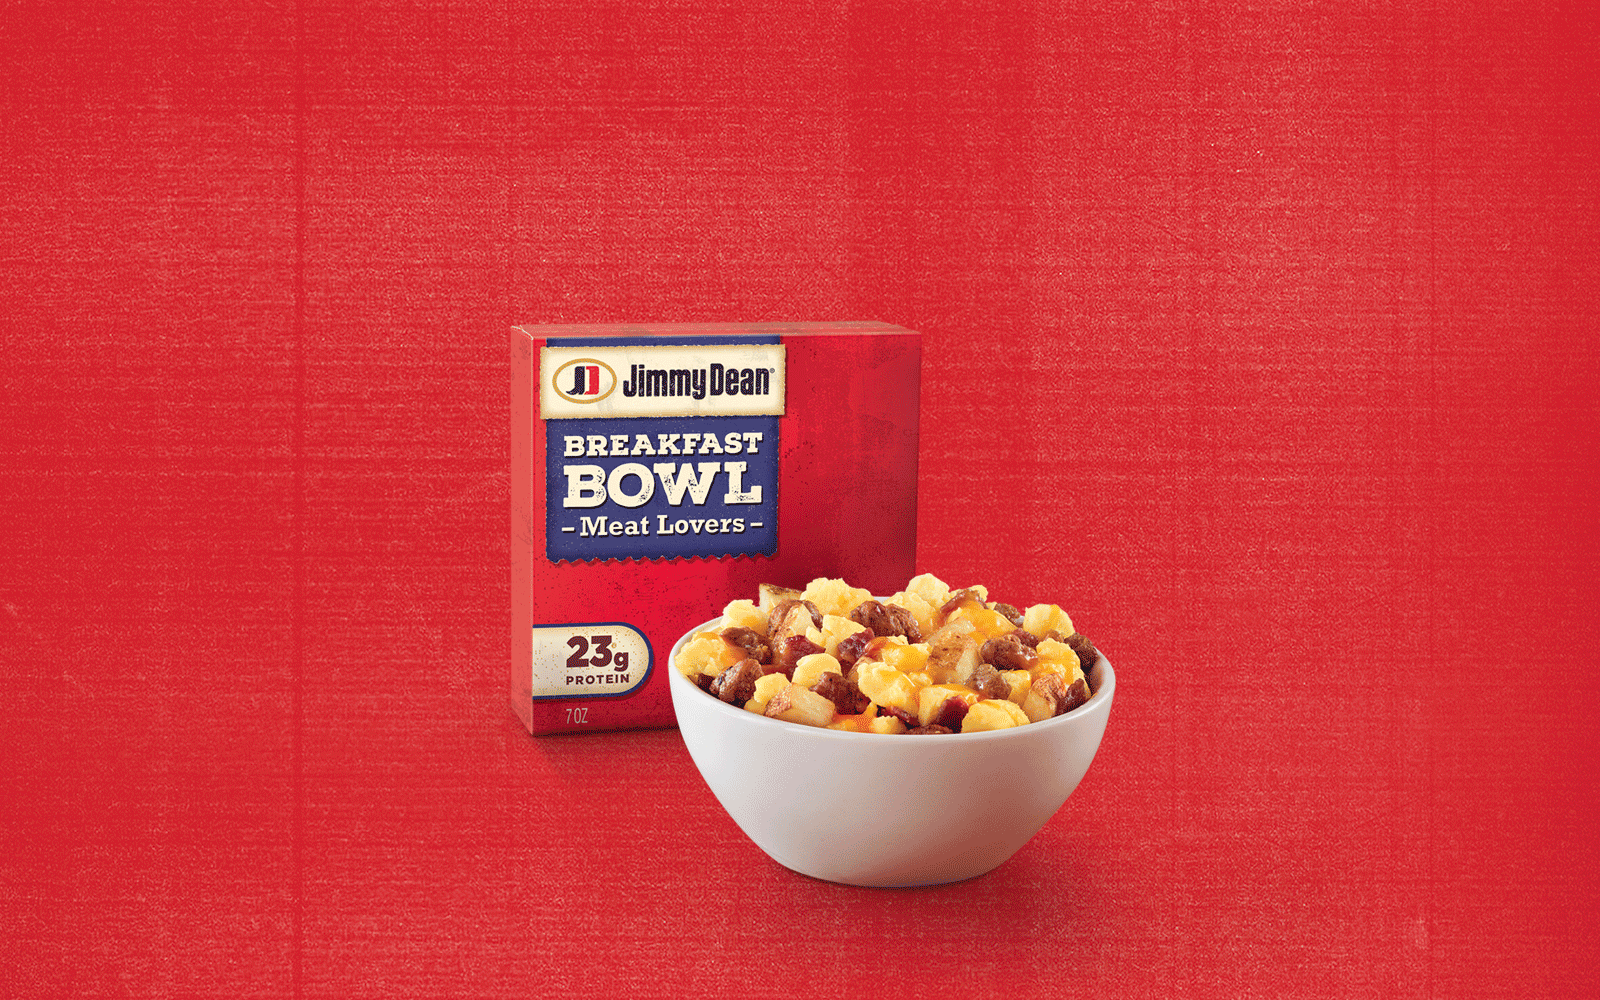 Jimmy Dean Breakfast Bowls